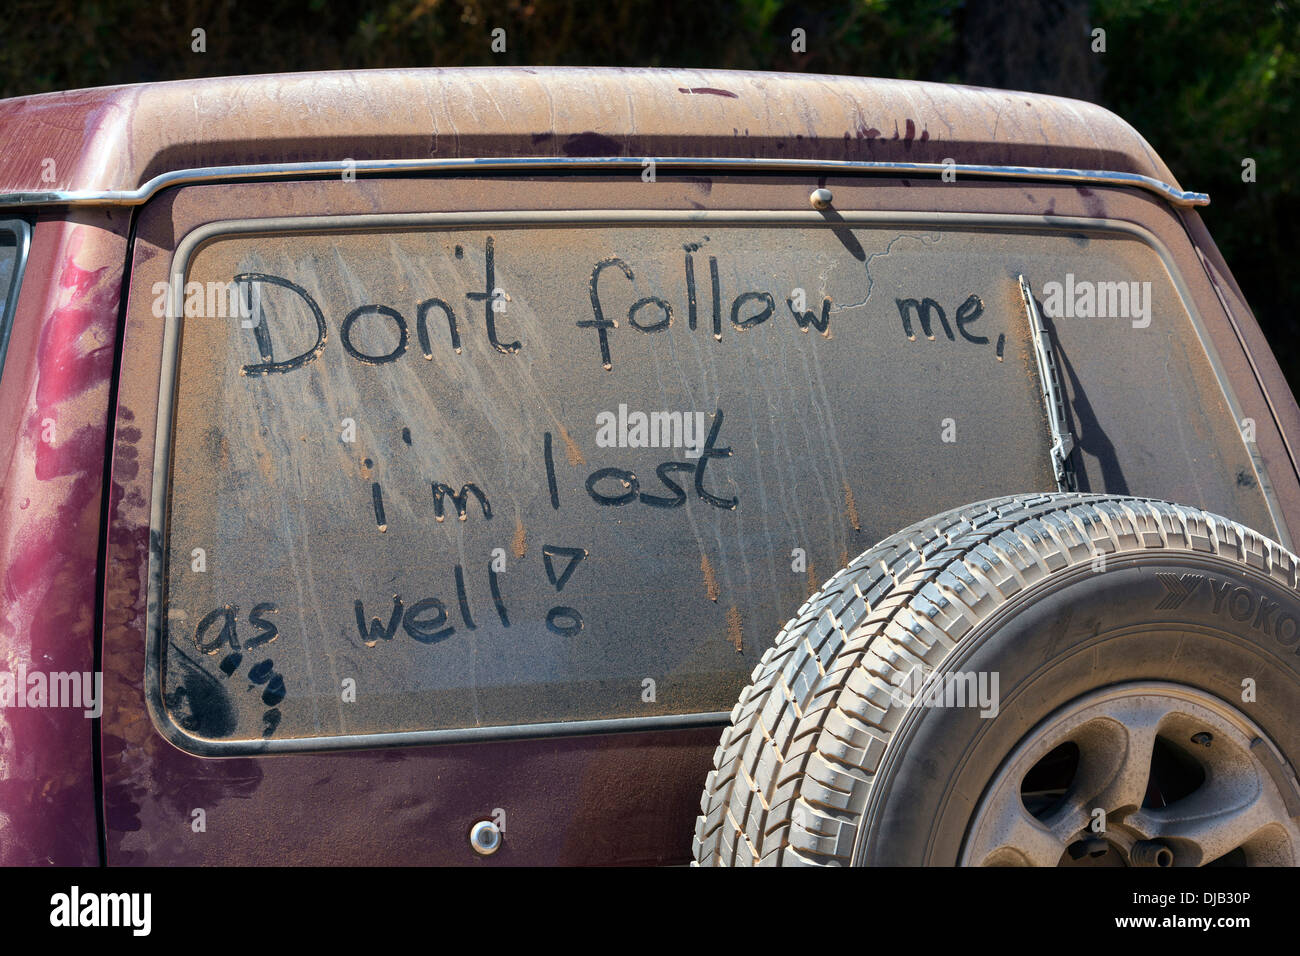 Ne suivez pas moi, je suis perdu ainsi, écrit sur couvertes de poussière de fenêtre de voiture Esperance Australie Occidentale Banque D'Images